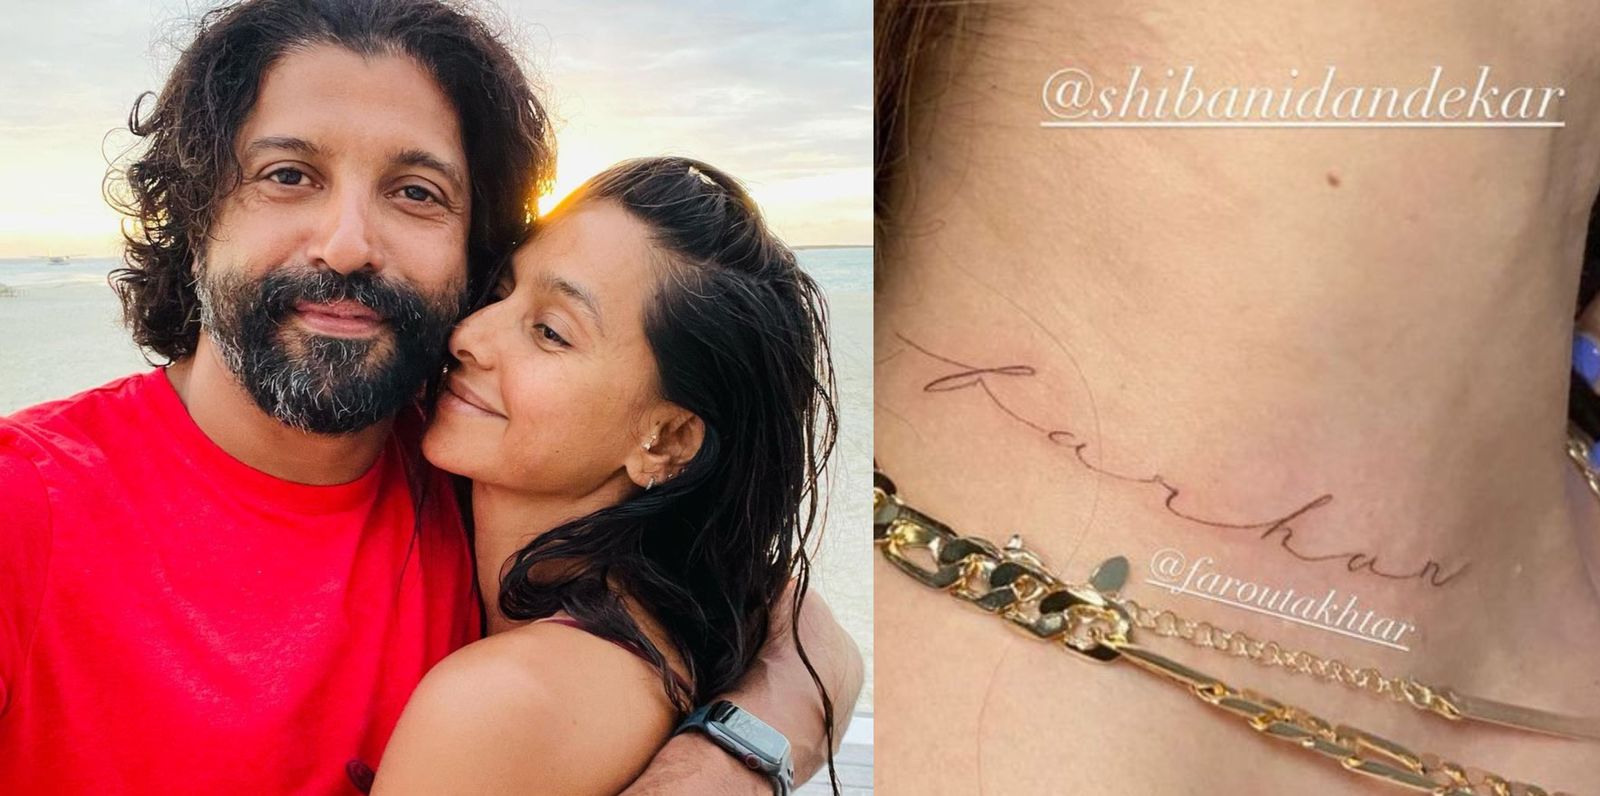 Shibani Dandekar gets boyfriend Farhan Akhtar's name tattooed on the neck on her birthday